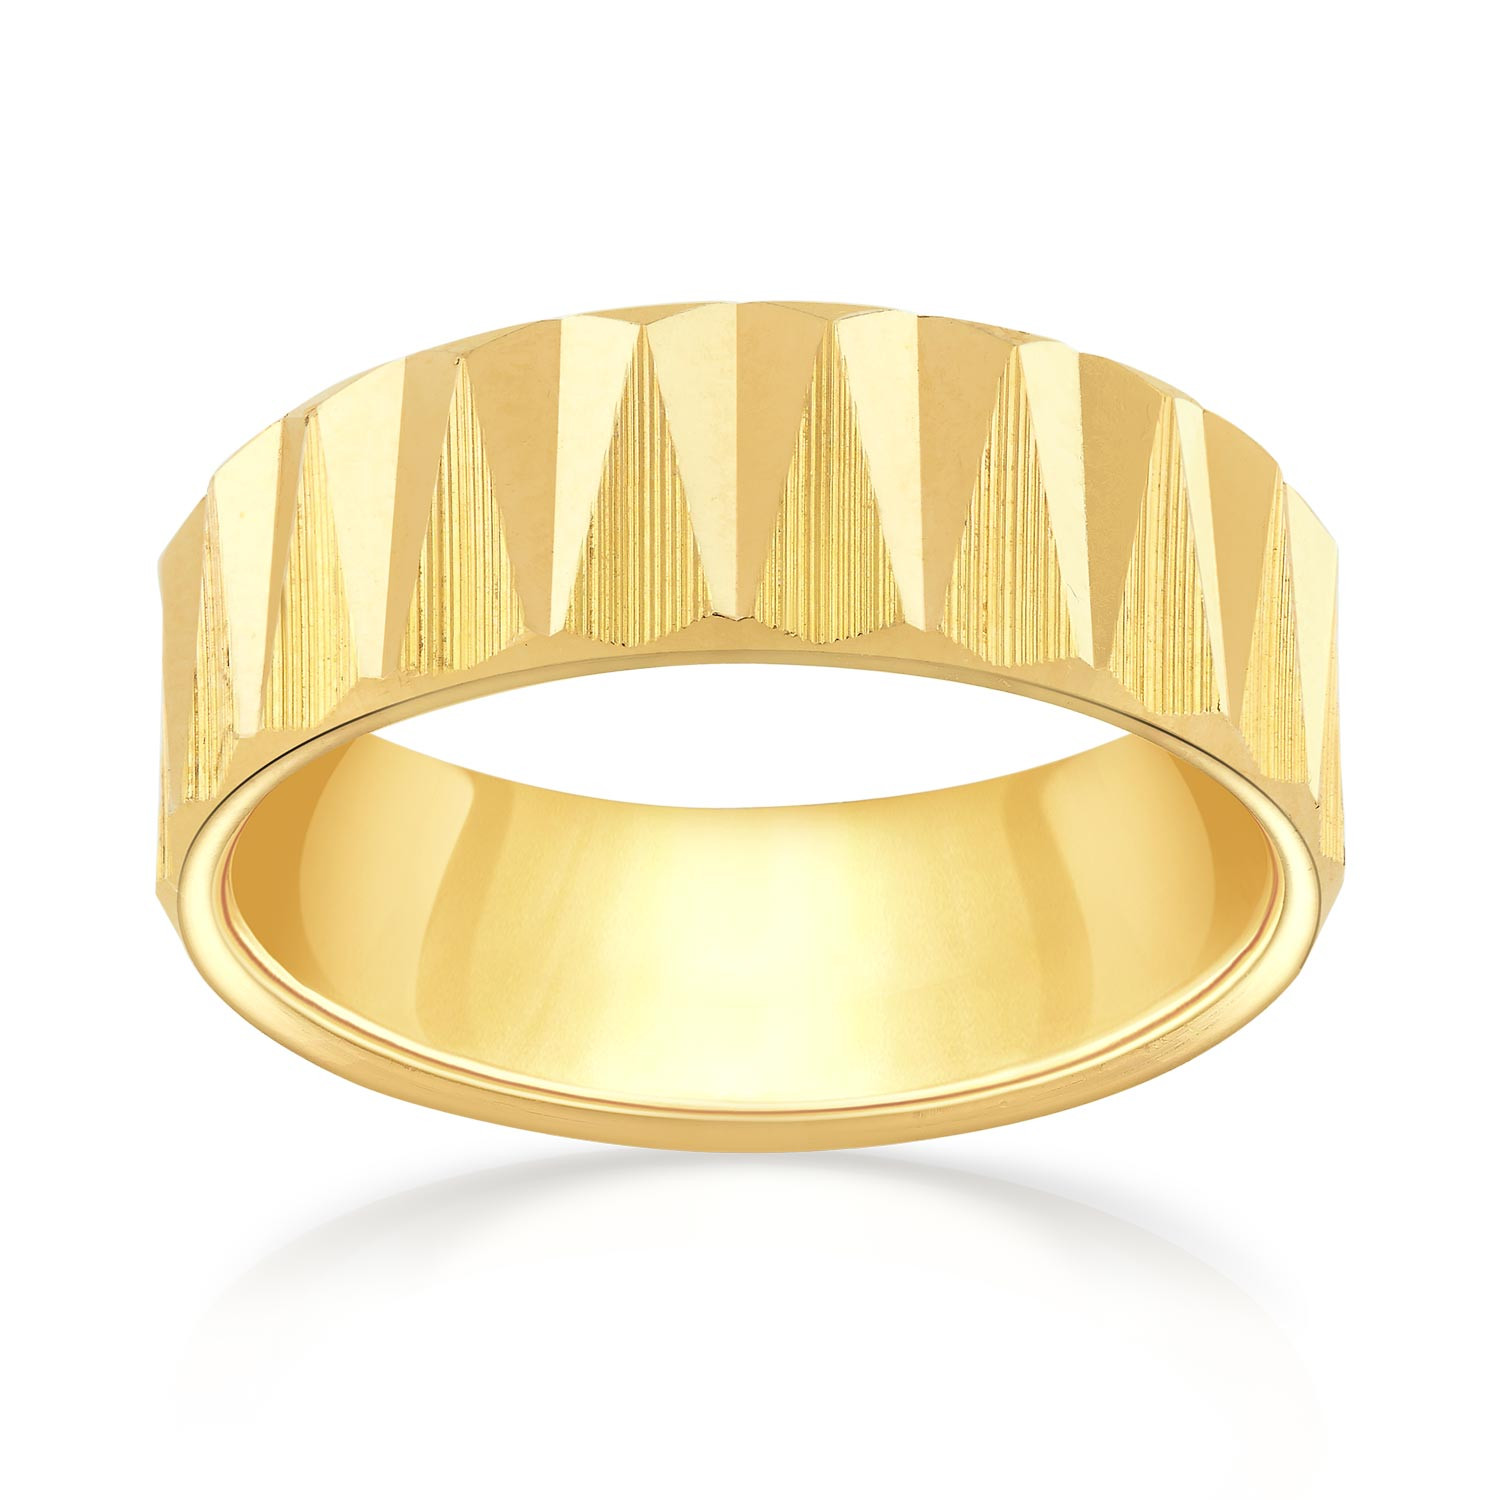 Buy Malabar Gold Ring SKPLR59311 for Women Online | Malabar Gold & Diamonds